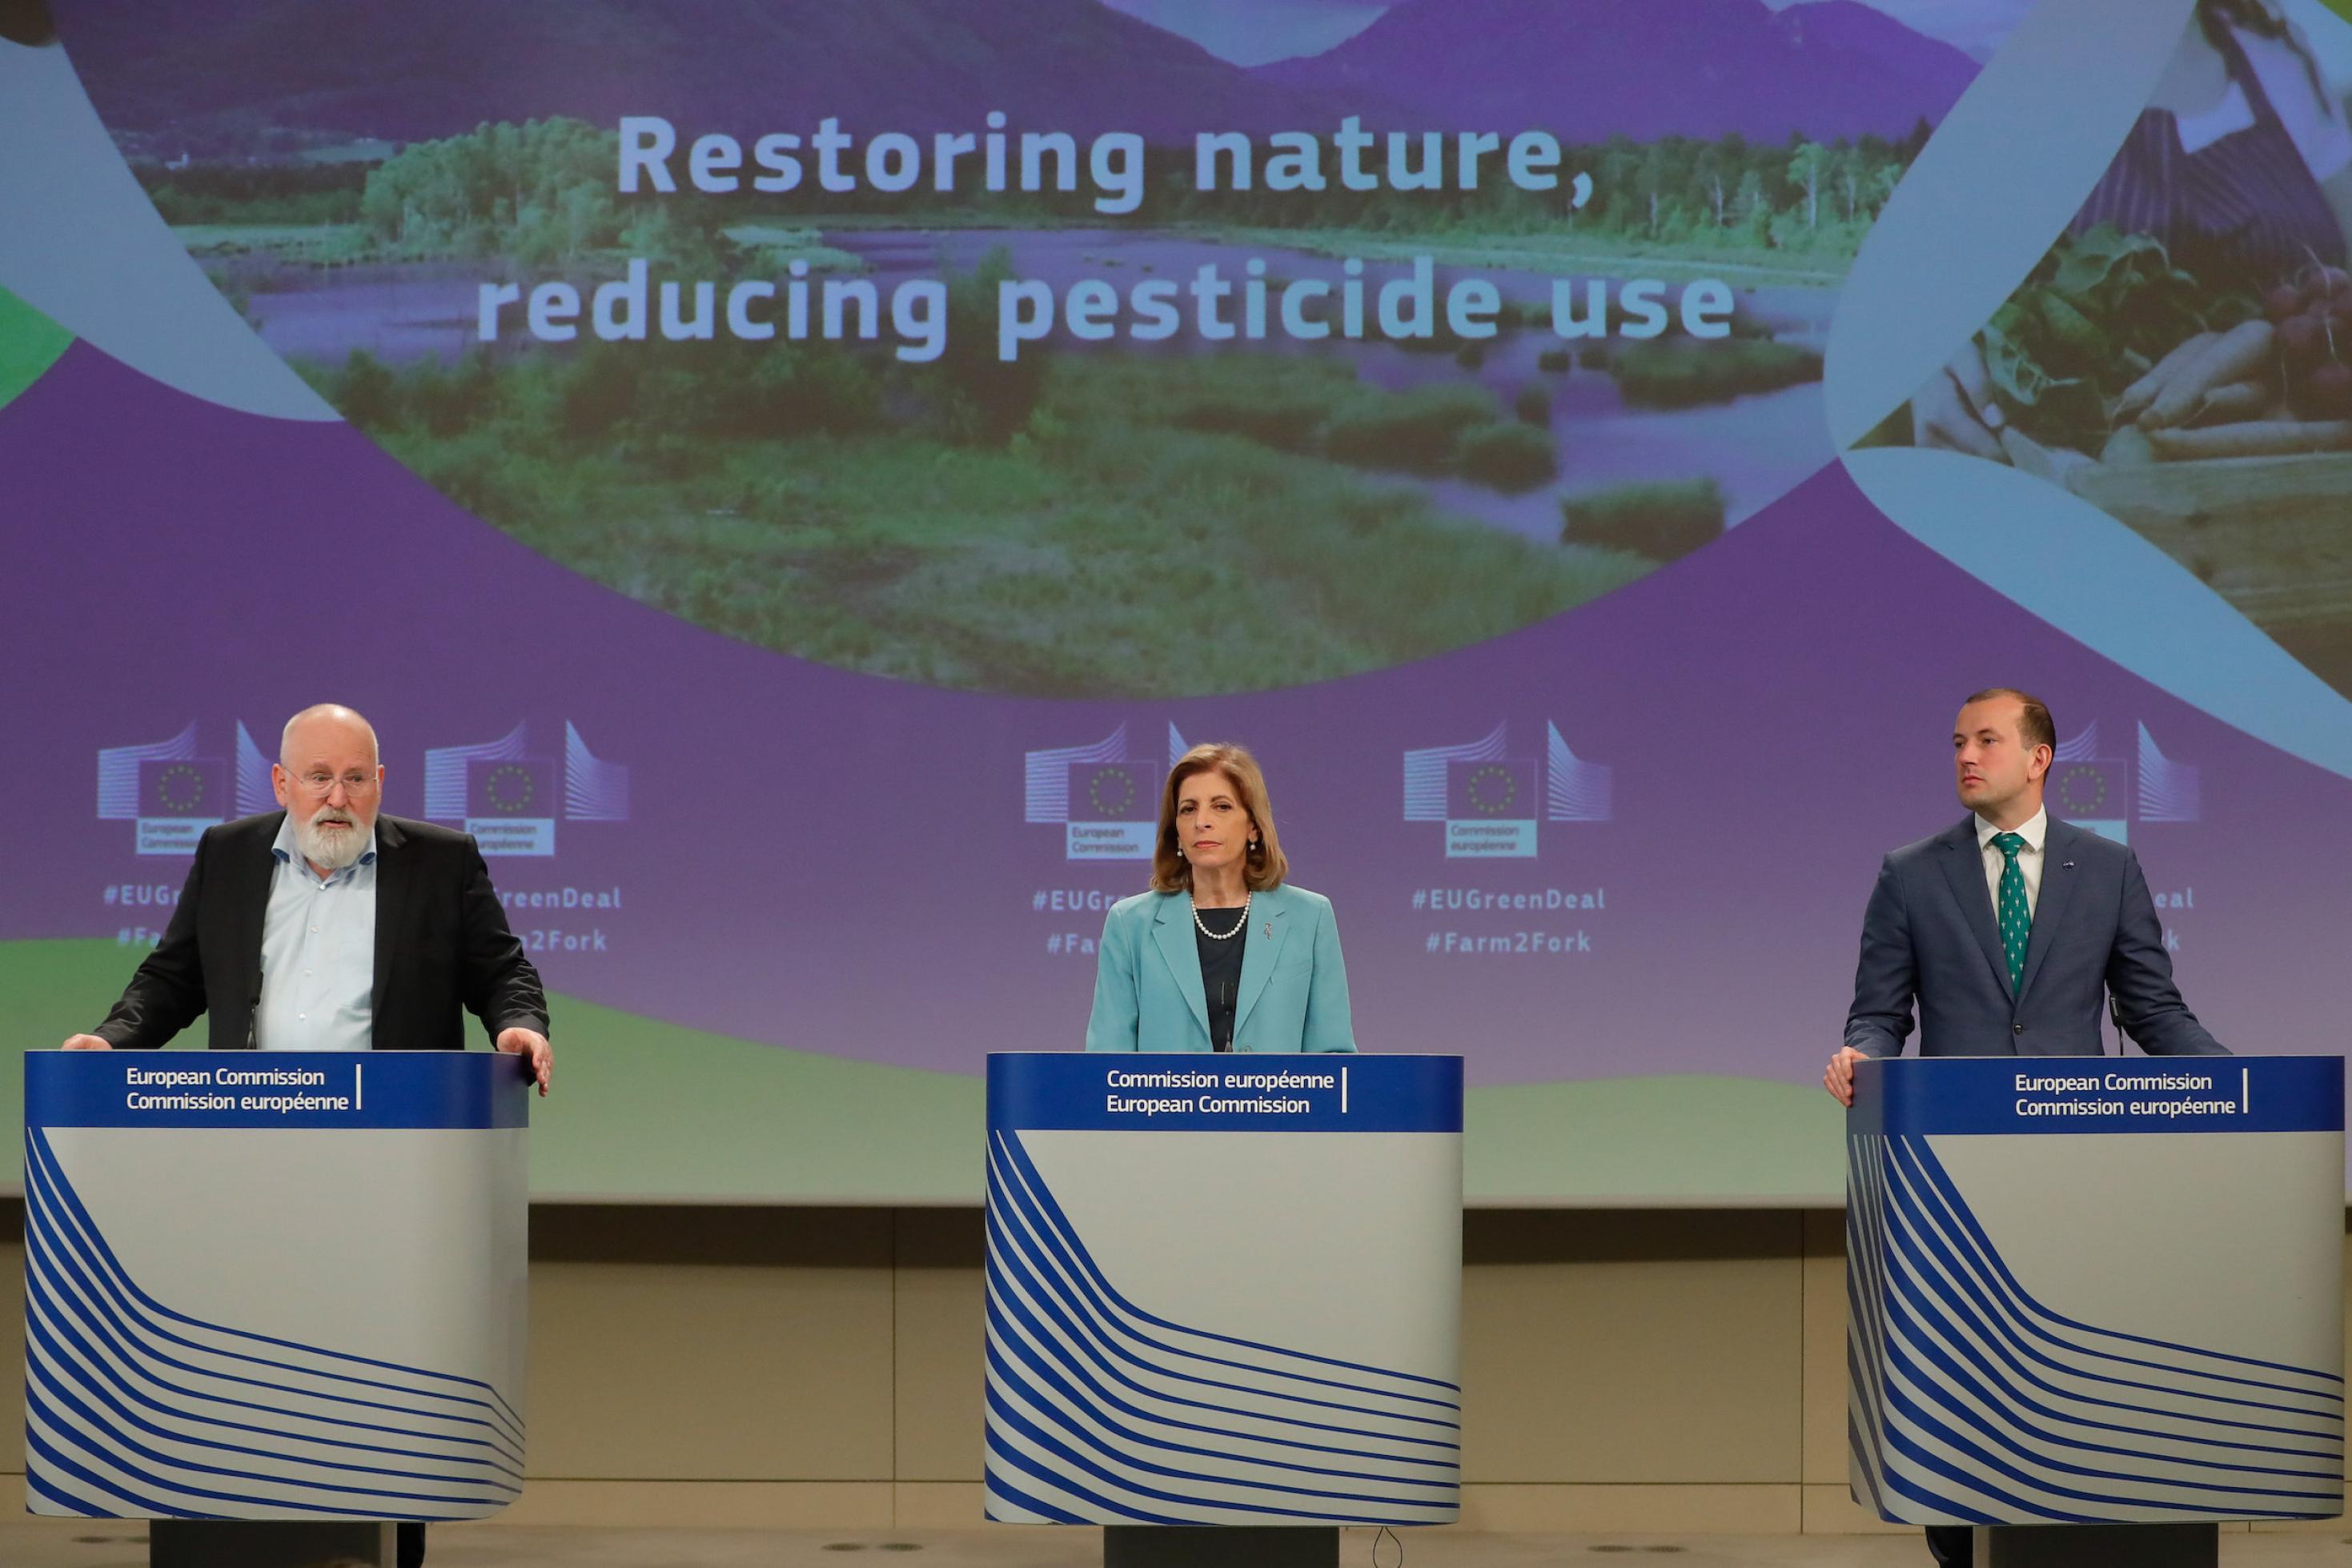 Die drei stehen an Pulten vor einer Wand mit der Aufschrift Restoring nature, reducing pesticide use.